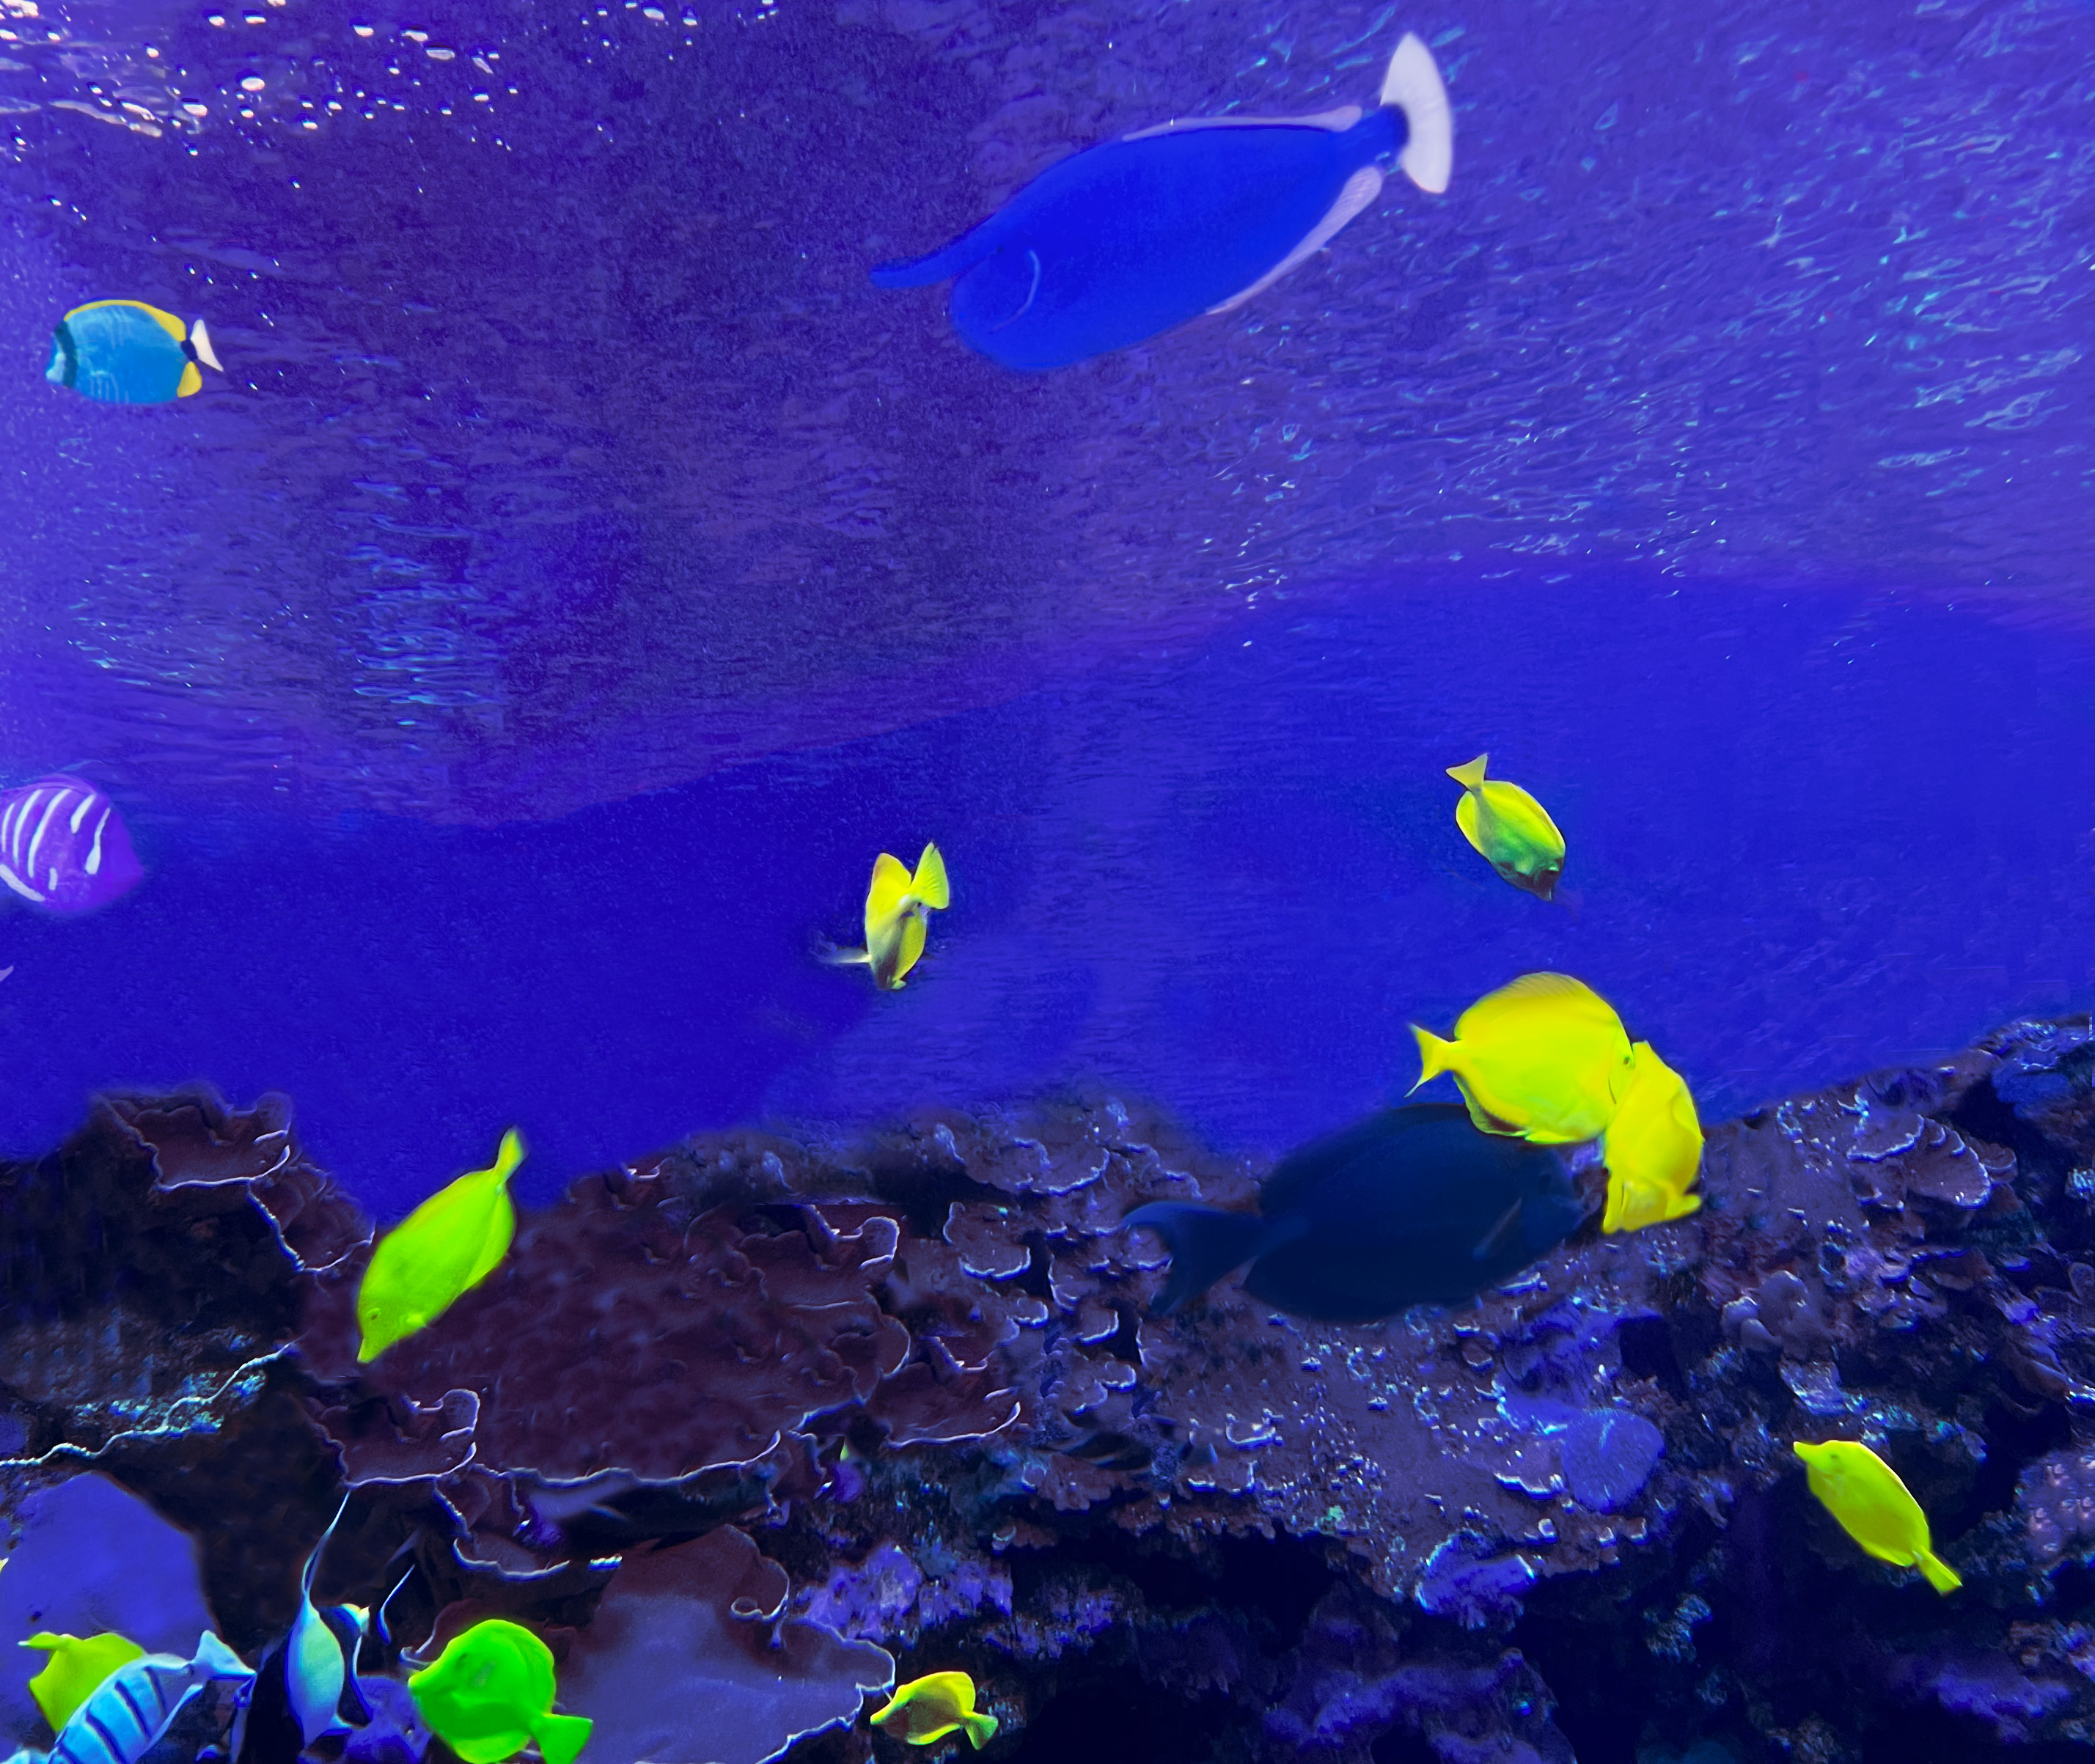 The Maui Aquarium